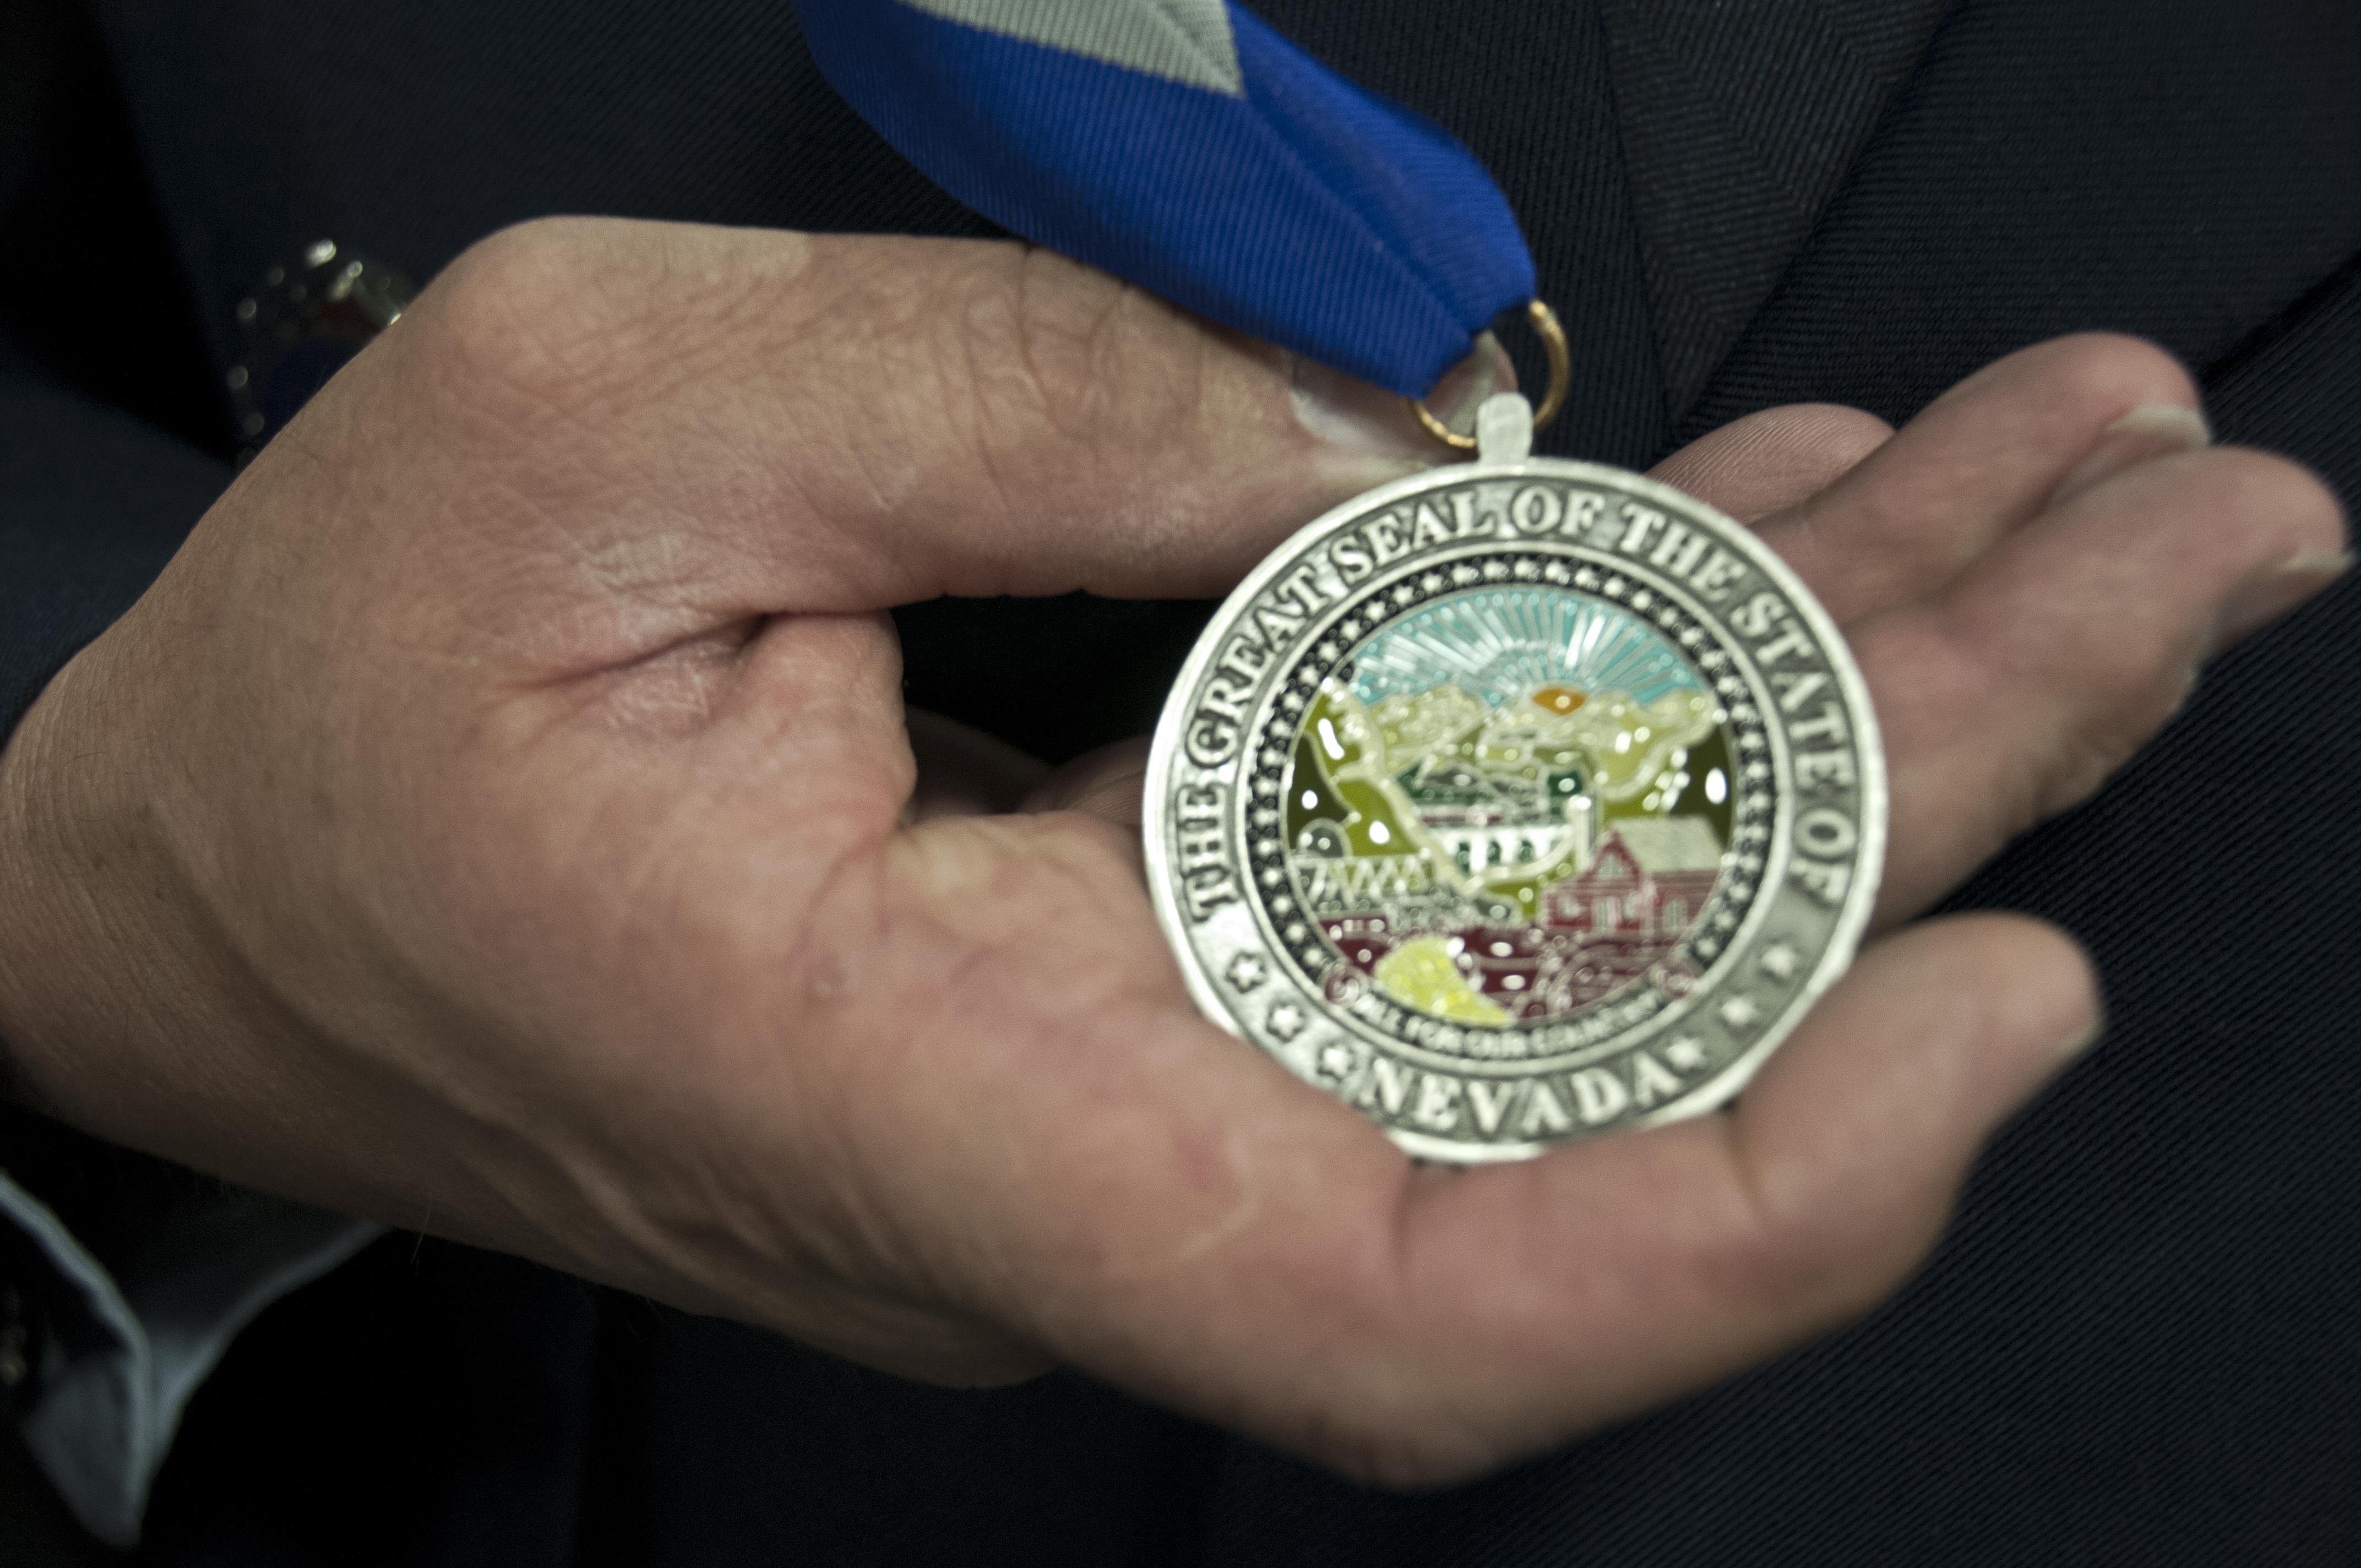 Master Sgt. Paul Hinen shows off his Drennan A. Clark-Order of Nevada medal April 2, 2017 at Nevada Air National Guard Base, Reno, Nev.